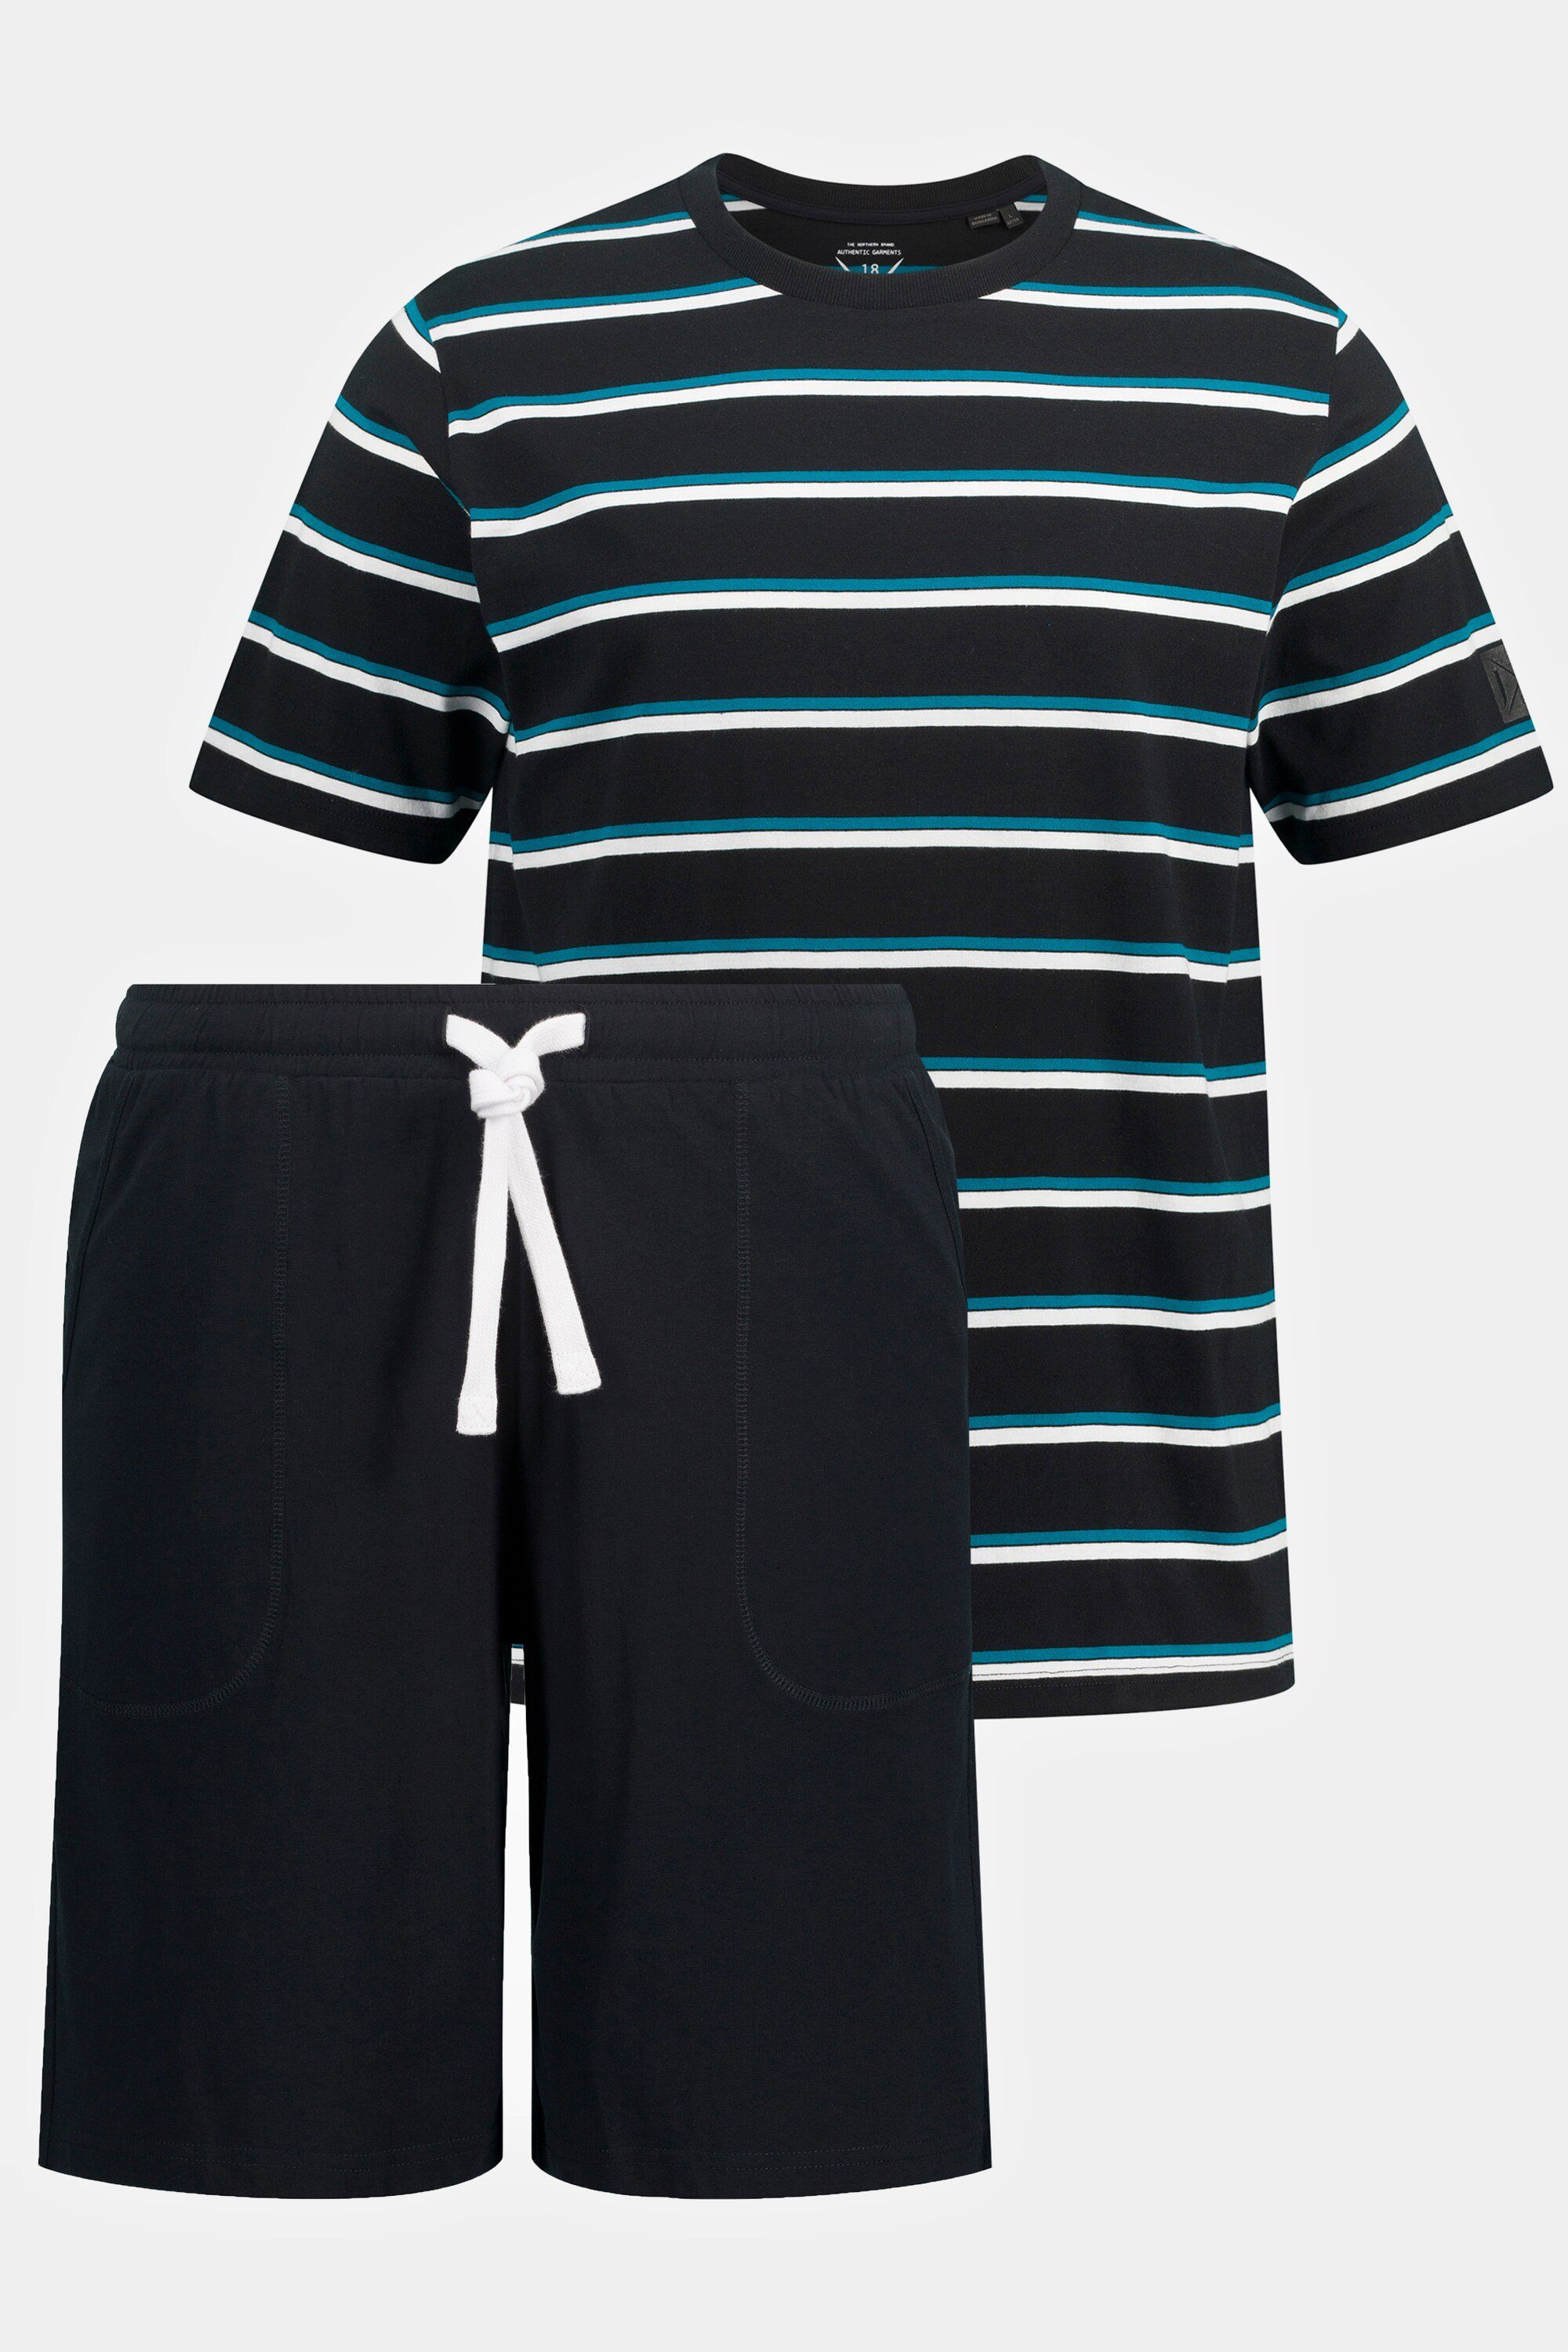 Schlafanzug kurzer JP1880 Zweiteiler Homewear Schlafanzug Shorts